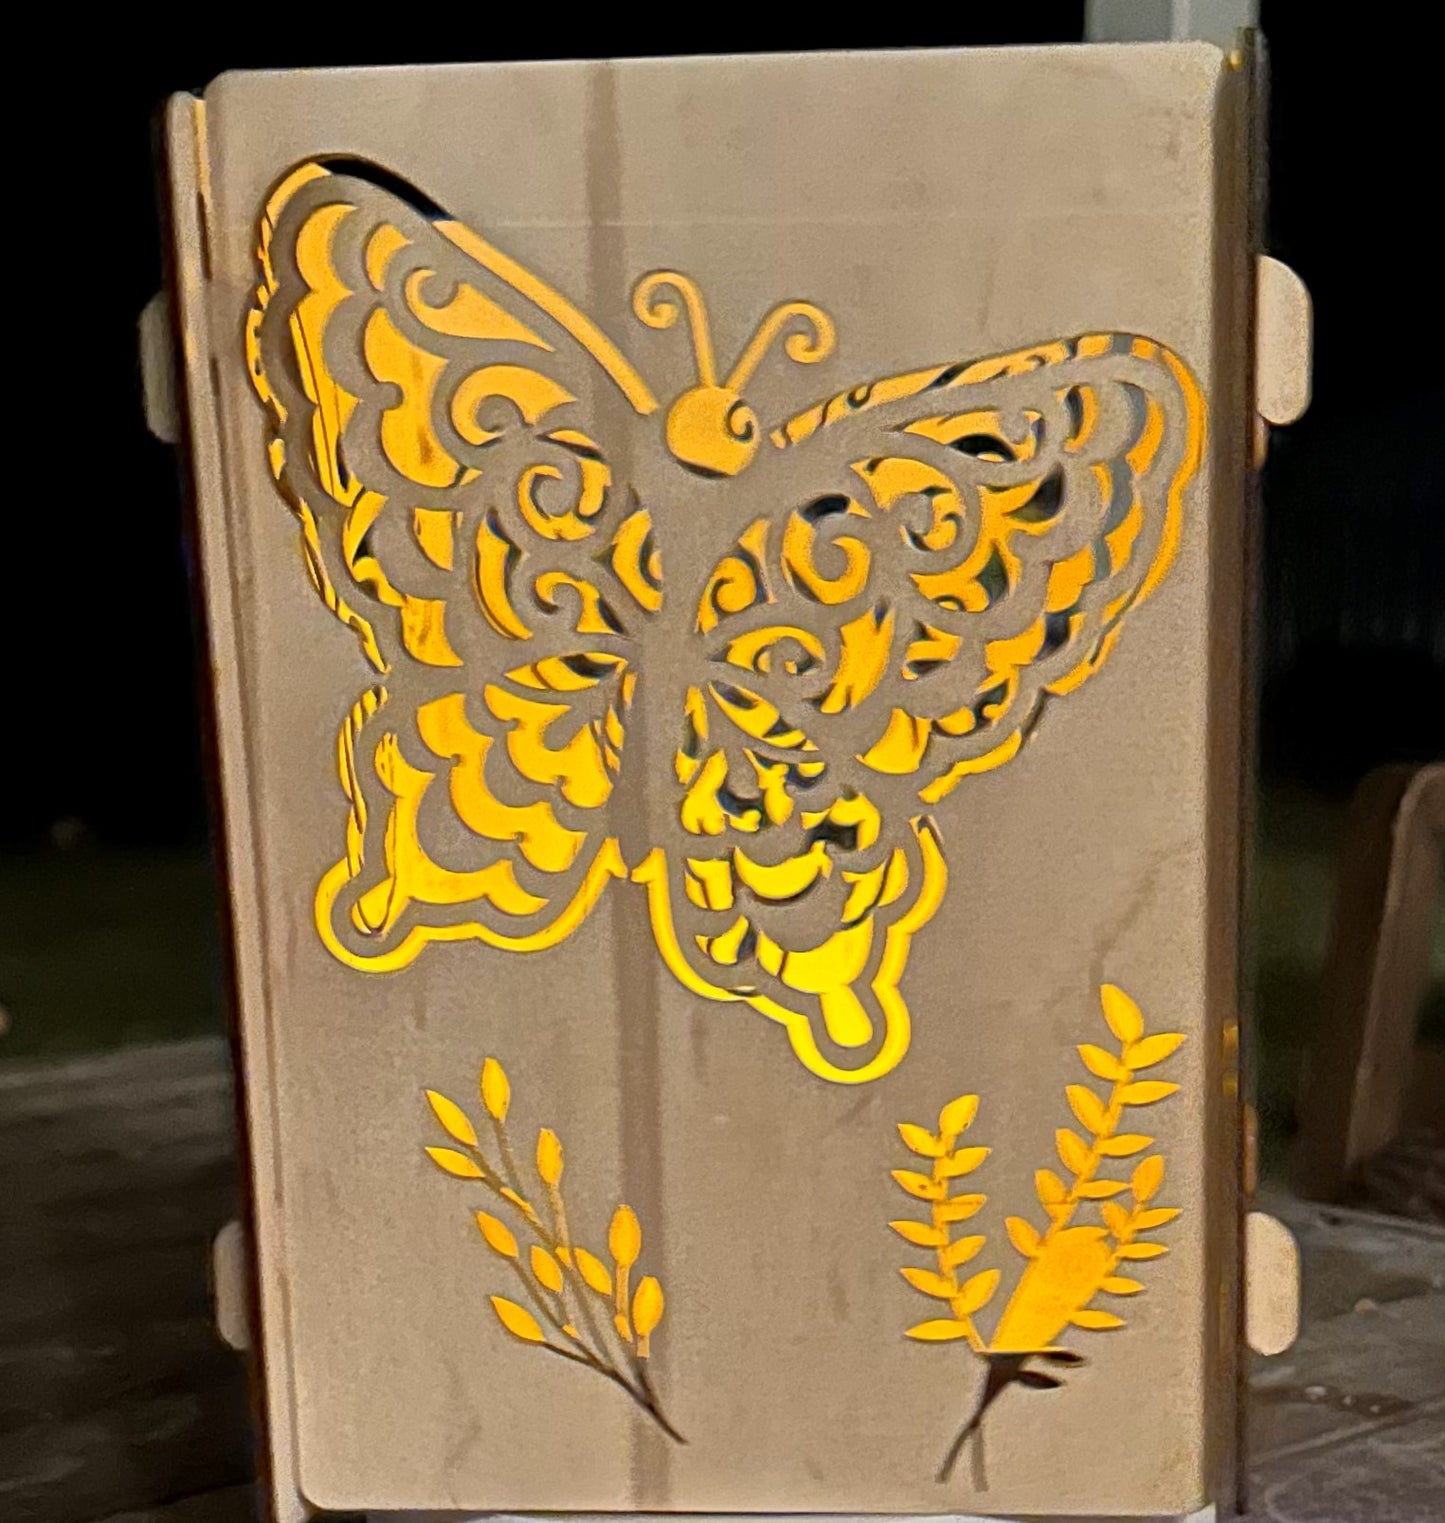 Butterfly Lantern